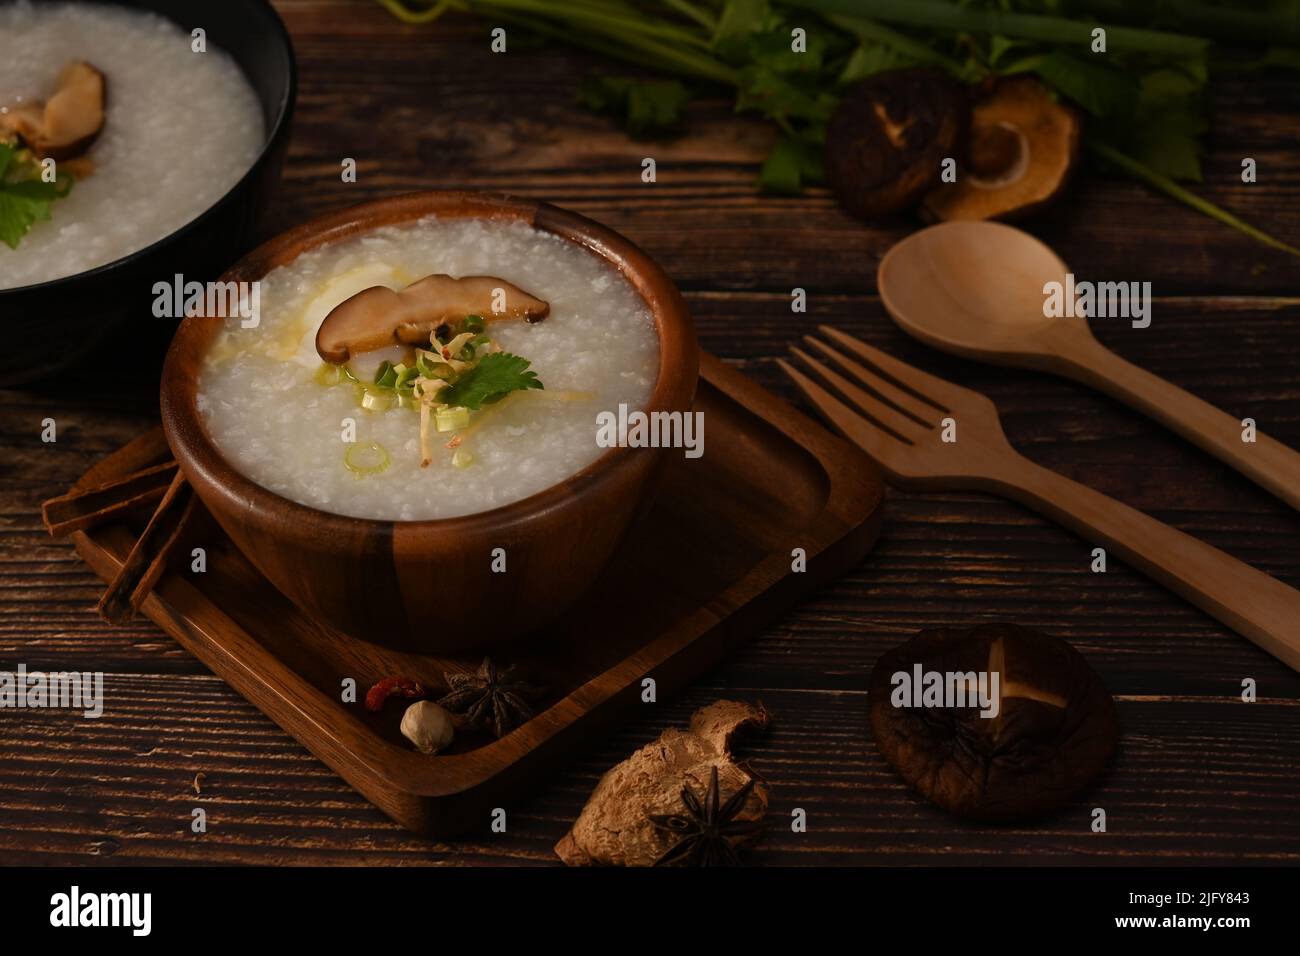 Porridge de riz, bouillie de riz ou congee avec champignons shiitake, tranche de gingembre et de scallion servis dans un bol en bois pour un repas léger Banque D'Images